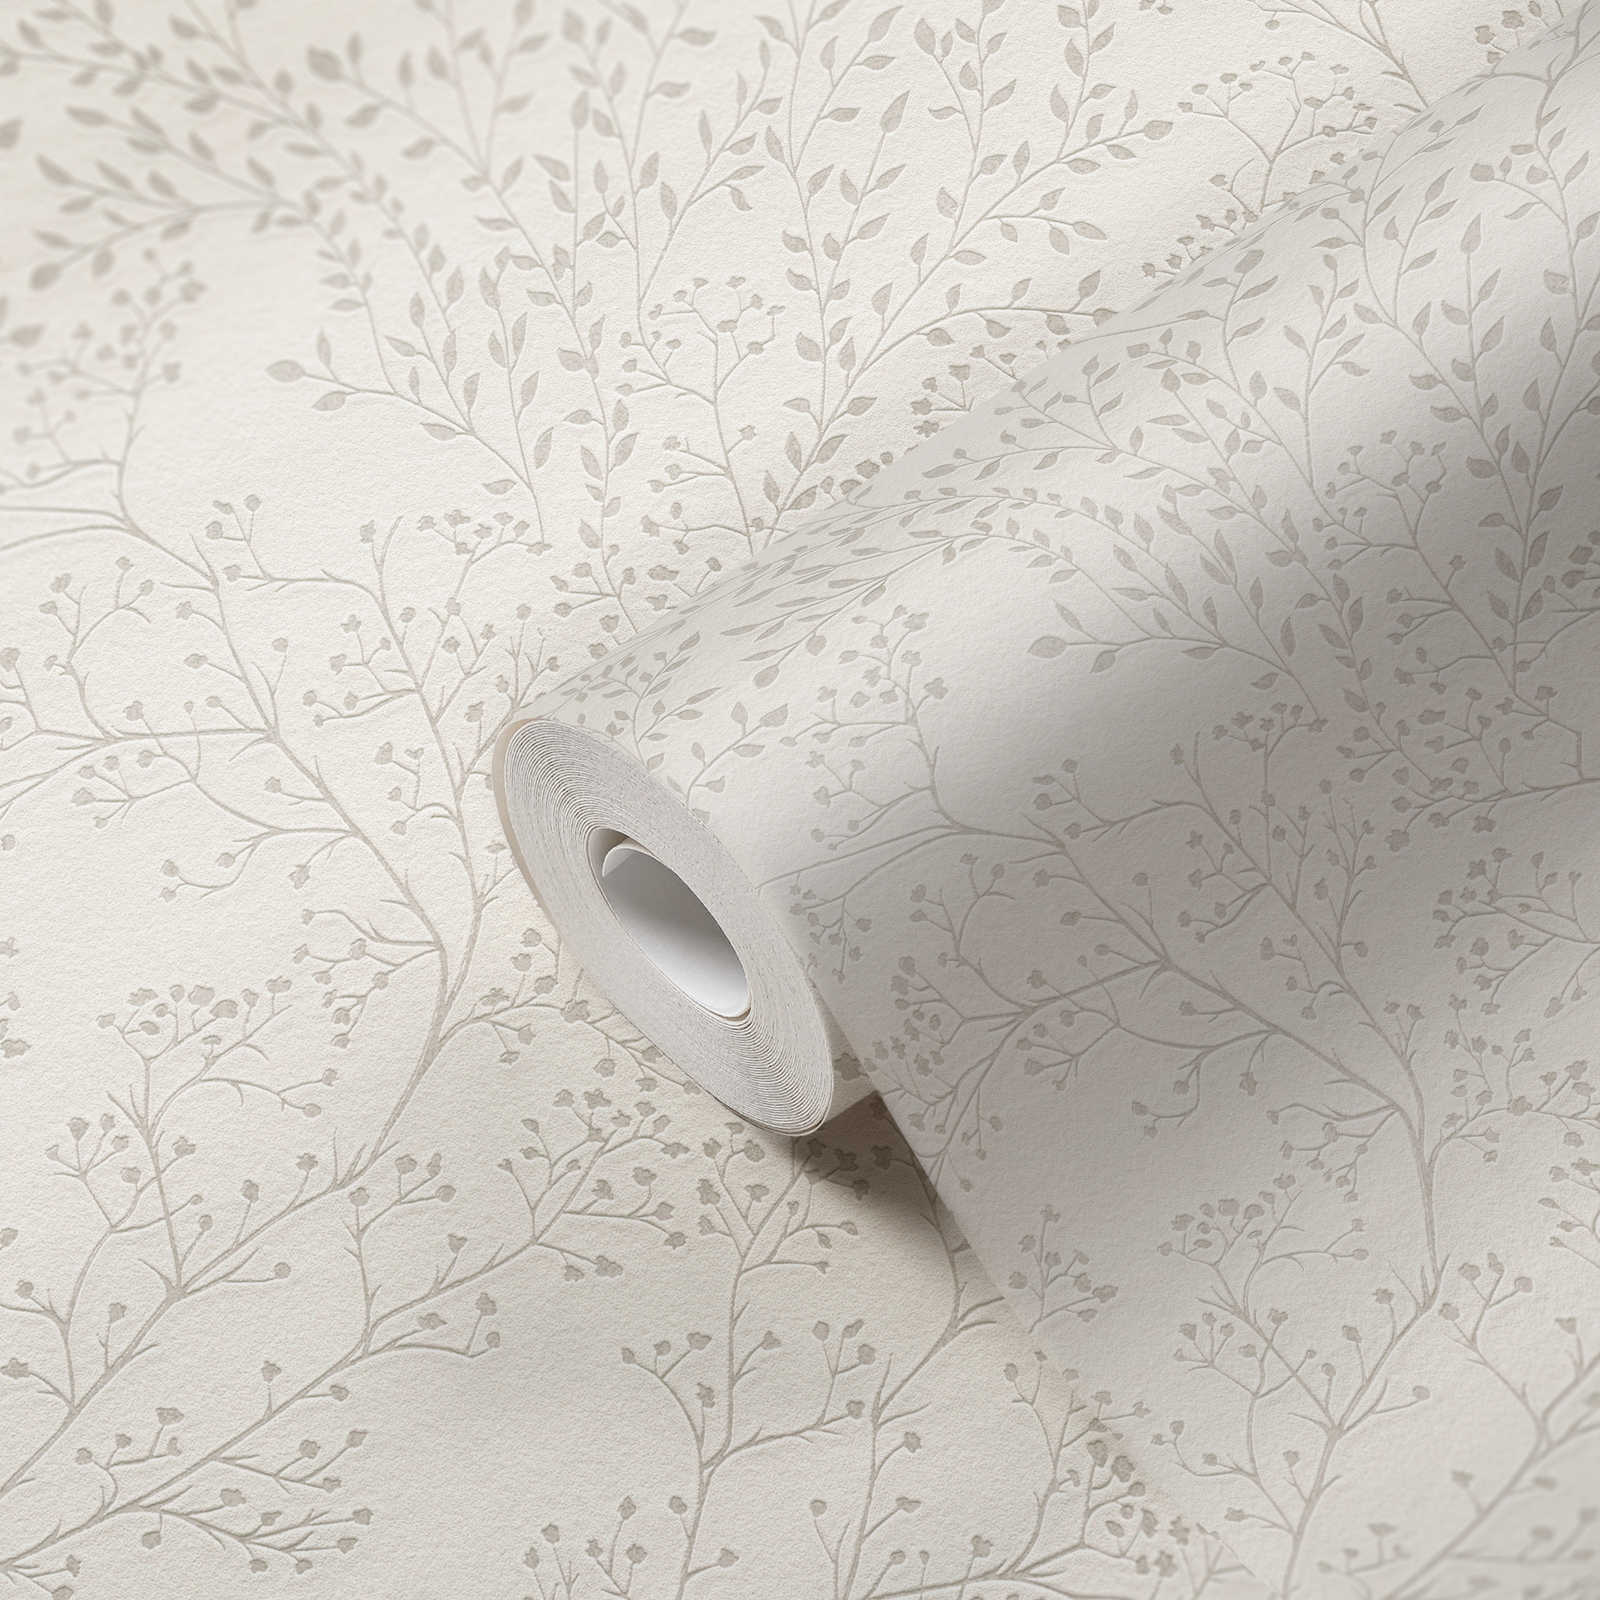             Papel pintado liso blanco crema con diseño de hojas, efecto de brillo y textura
        